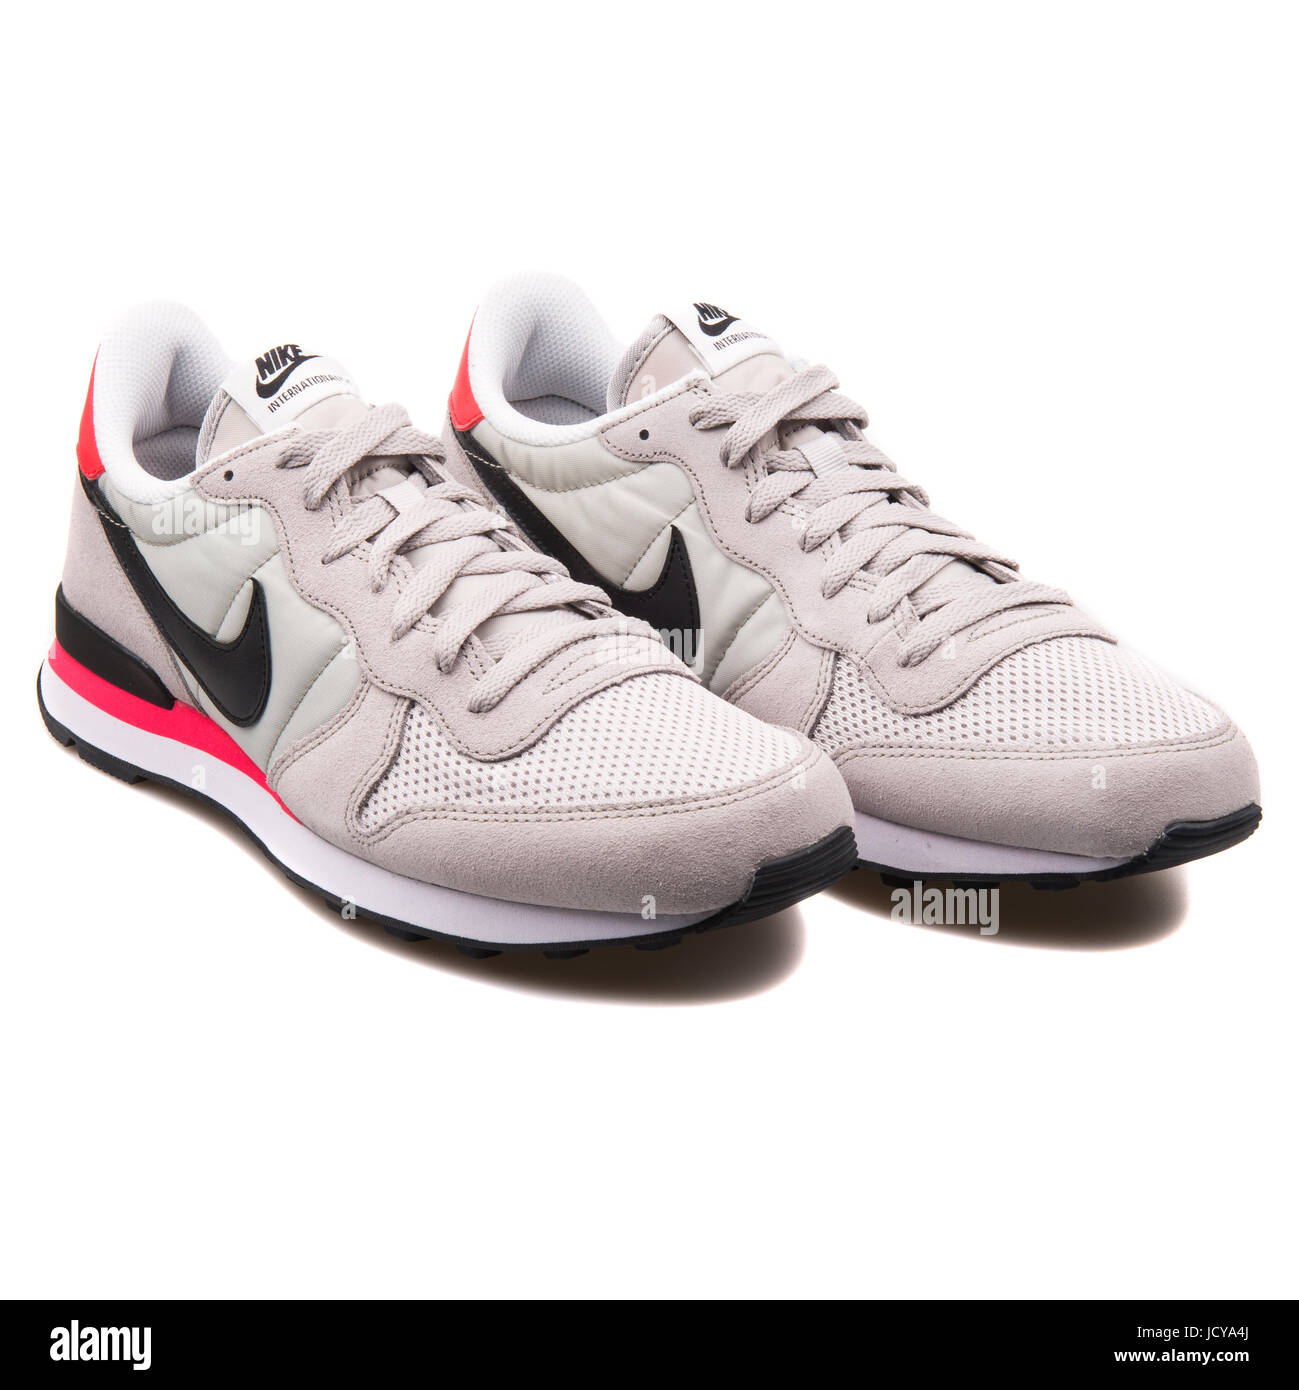 Nike Internationalist Neutral grau, schwarz und infraroter Herren  Laufschuhe - 631754-006 Stockfotografie - Alamy